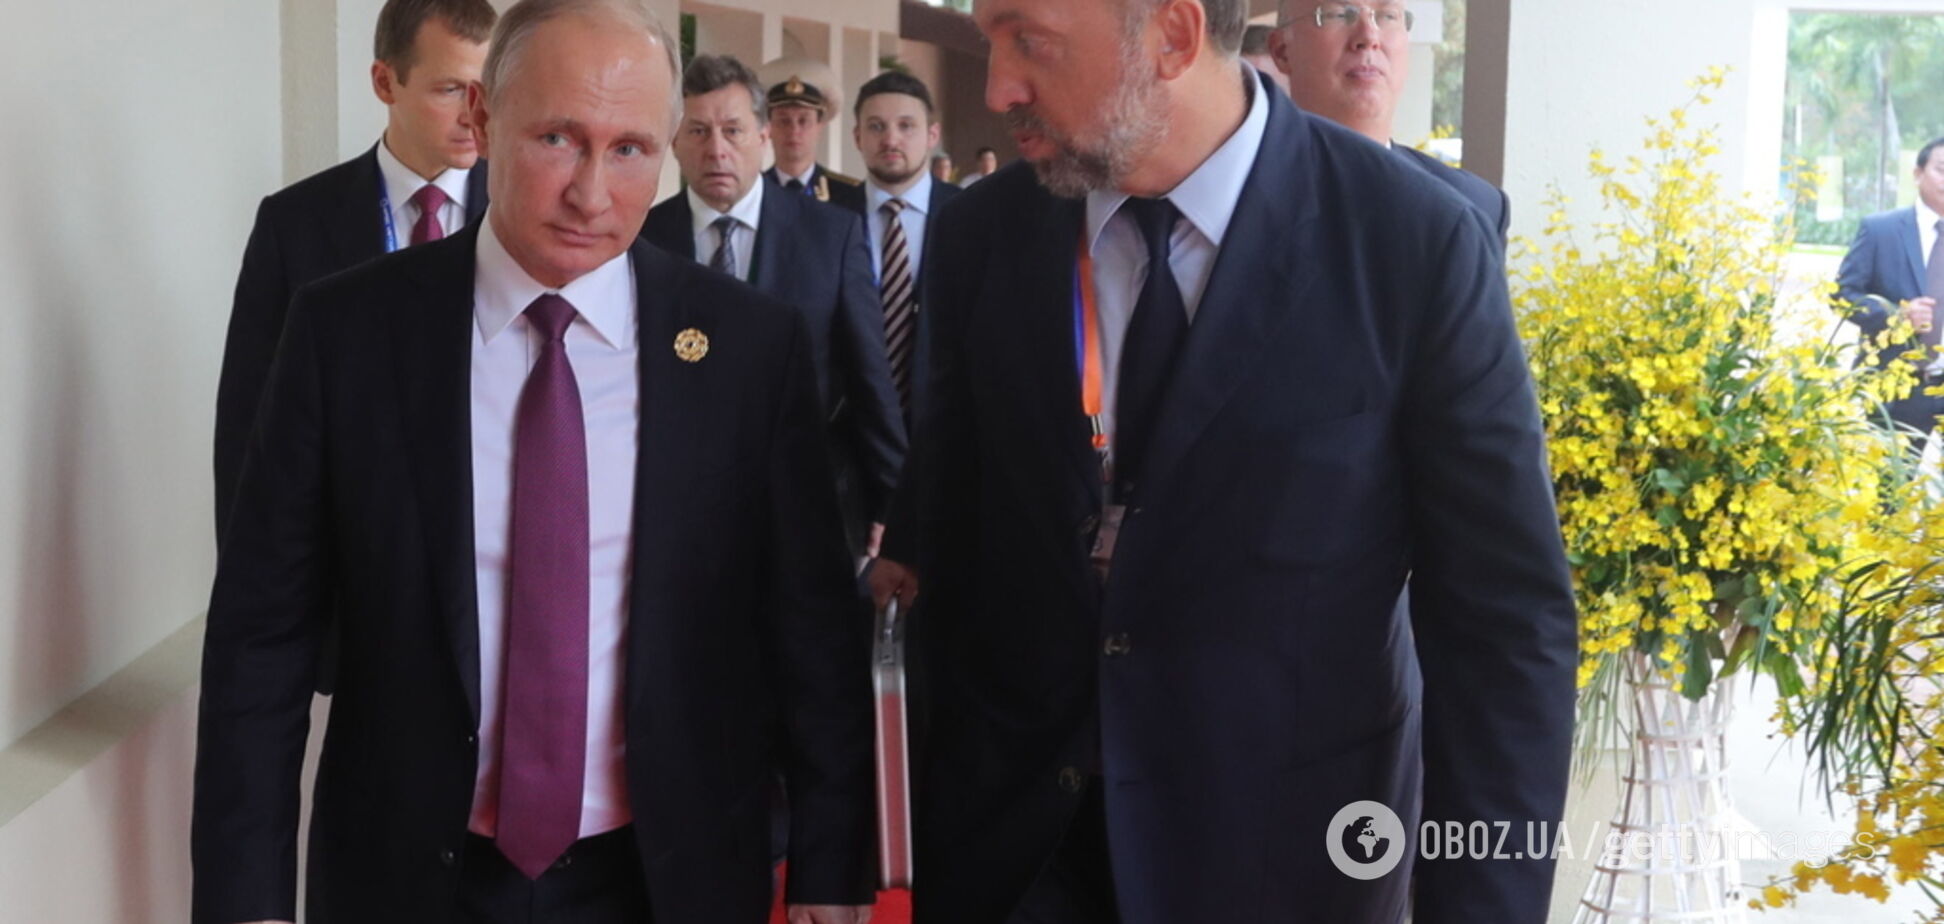 Друг Путина назвал единственный способ улучшения отношений России и США